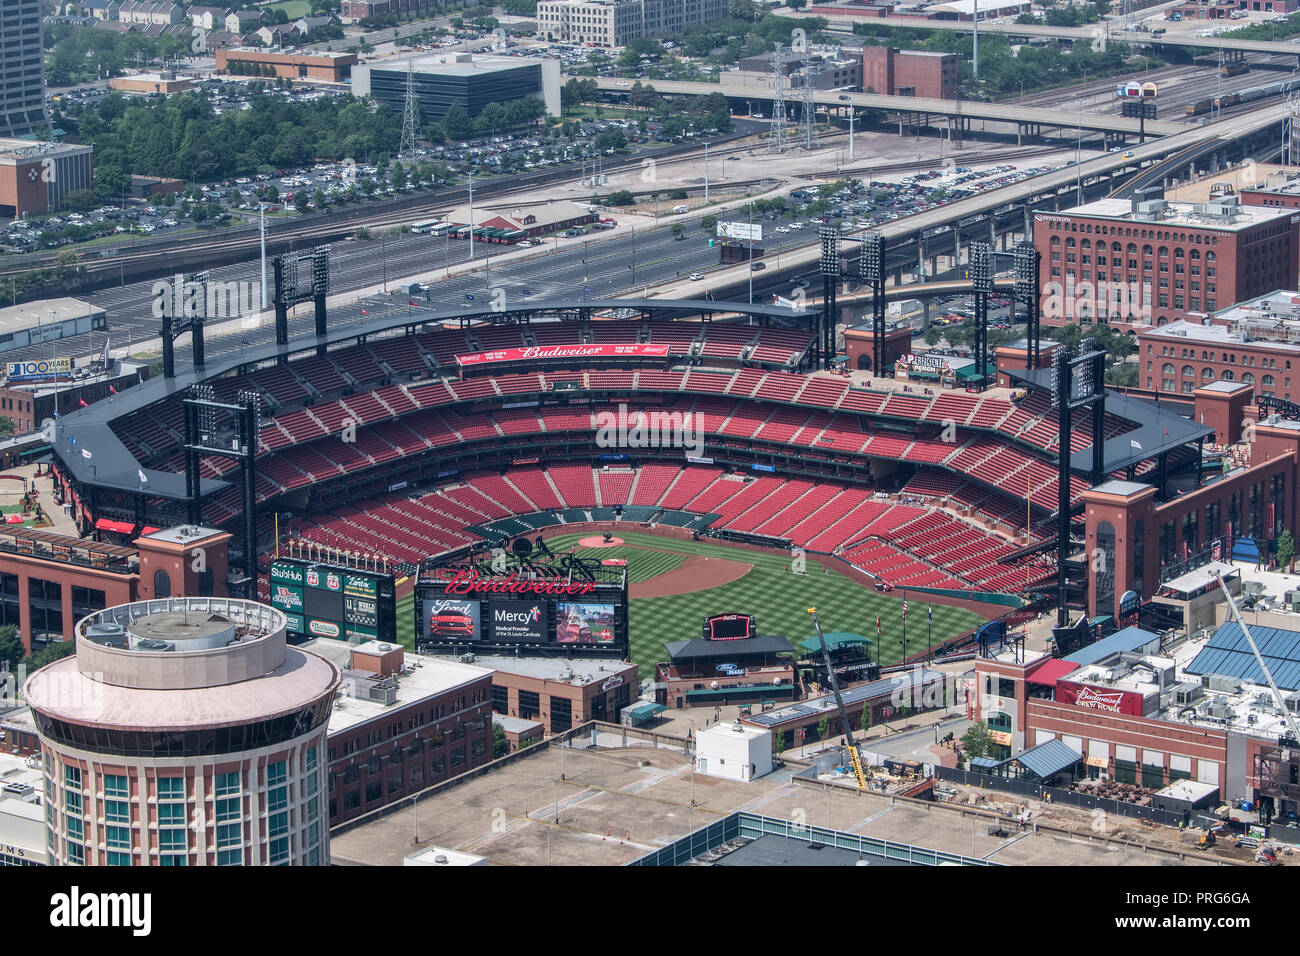 Anzeigen von Busch Stadium, Heimat der St. Louis Cardinals, von dem Wahrzeichen Gateway Arch, der Innenstadt von St. Louis, Missouri, USA. Stockfoto